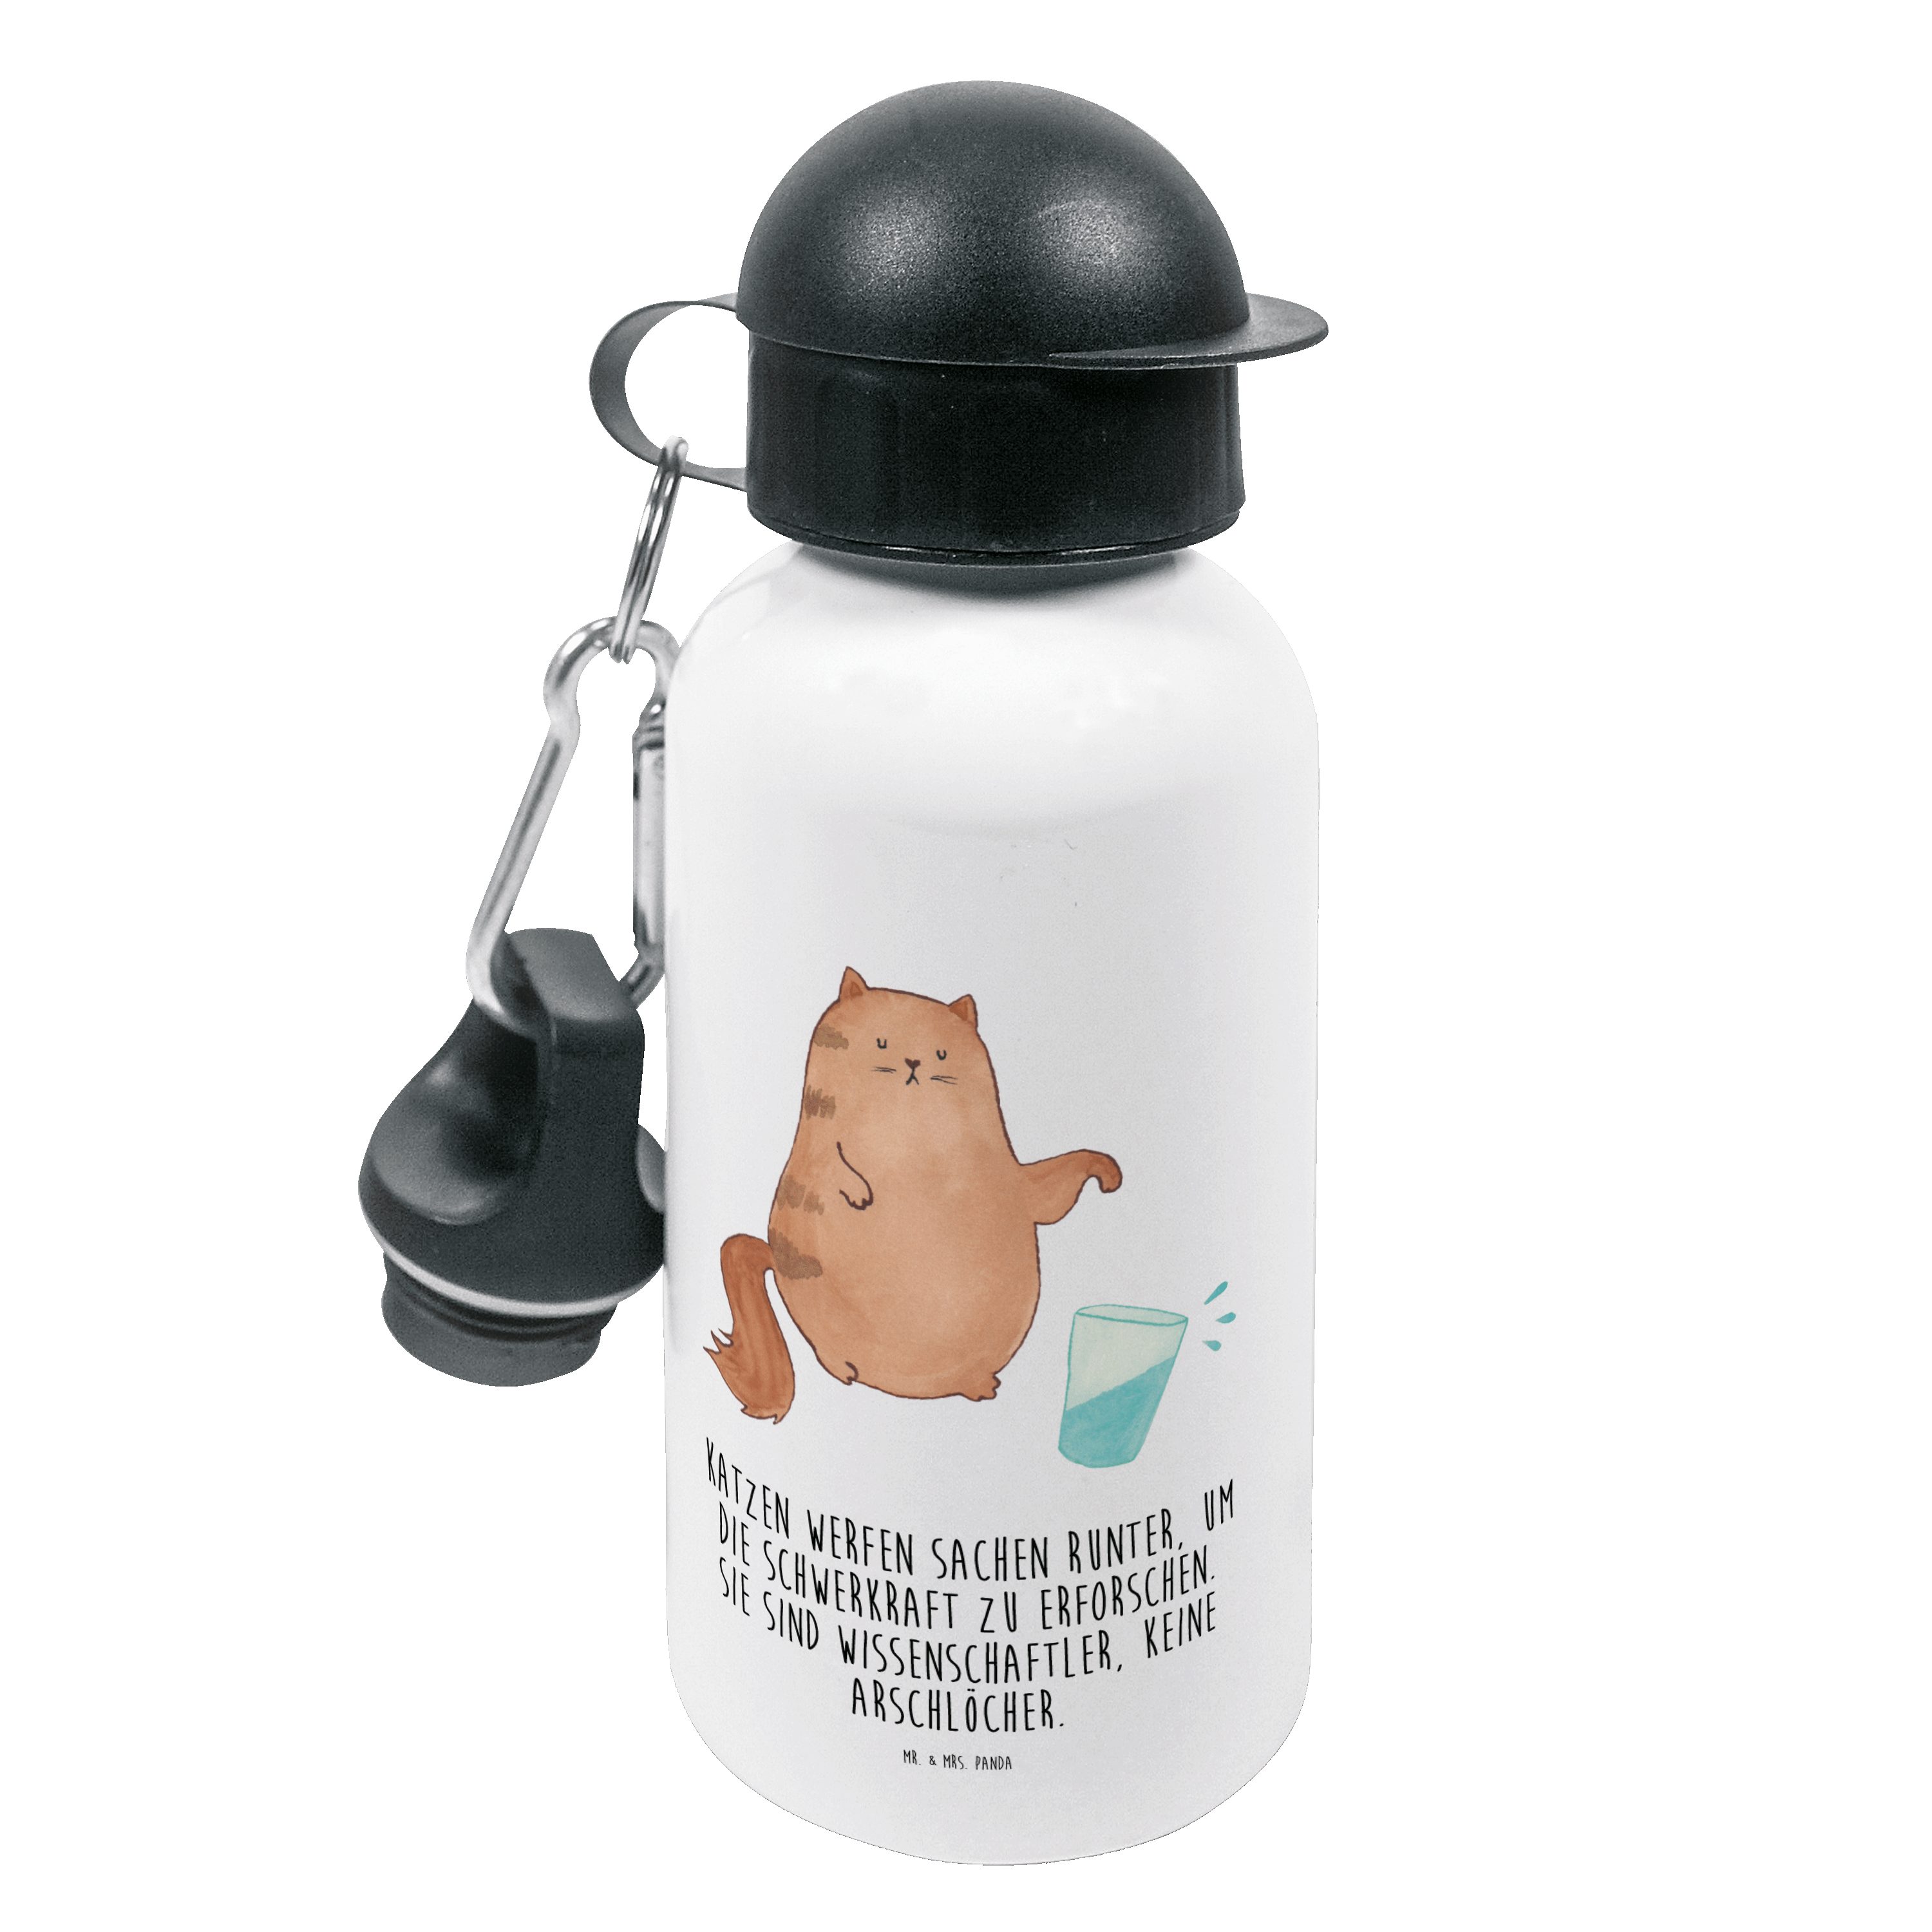 Mr. Katzenmot Katze & Mädchen, - Wasserglas Trinkflasche Weiß - Miau, Mrs. Panda Geschenk, lustig,